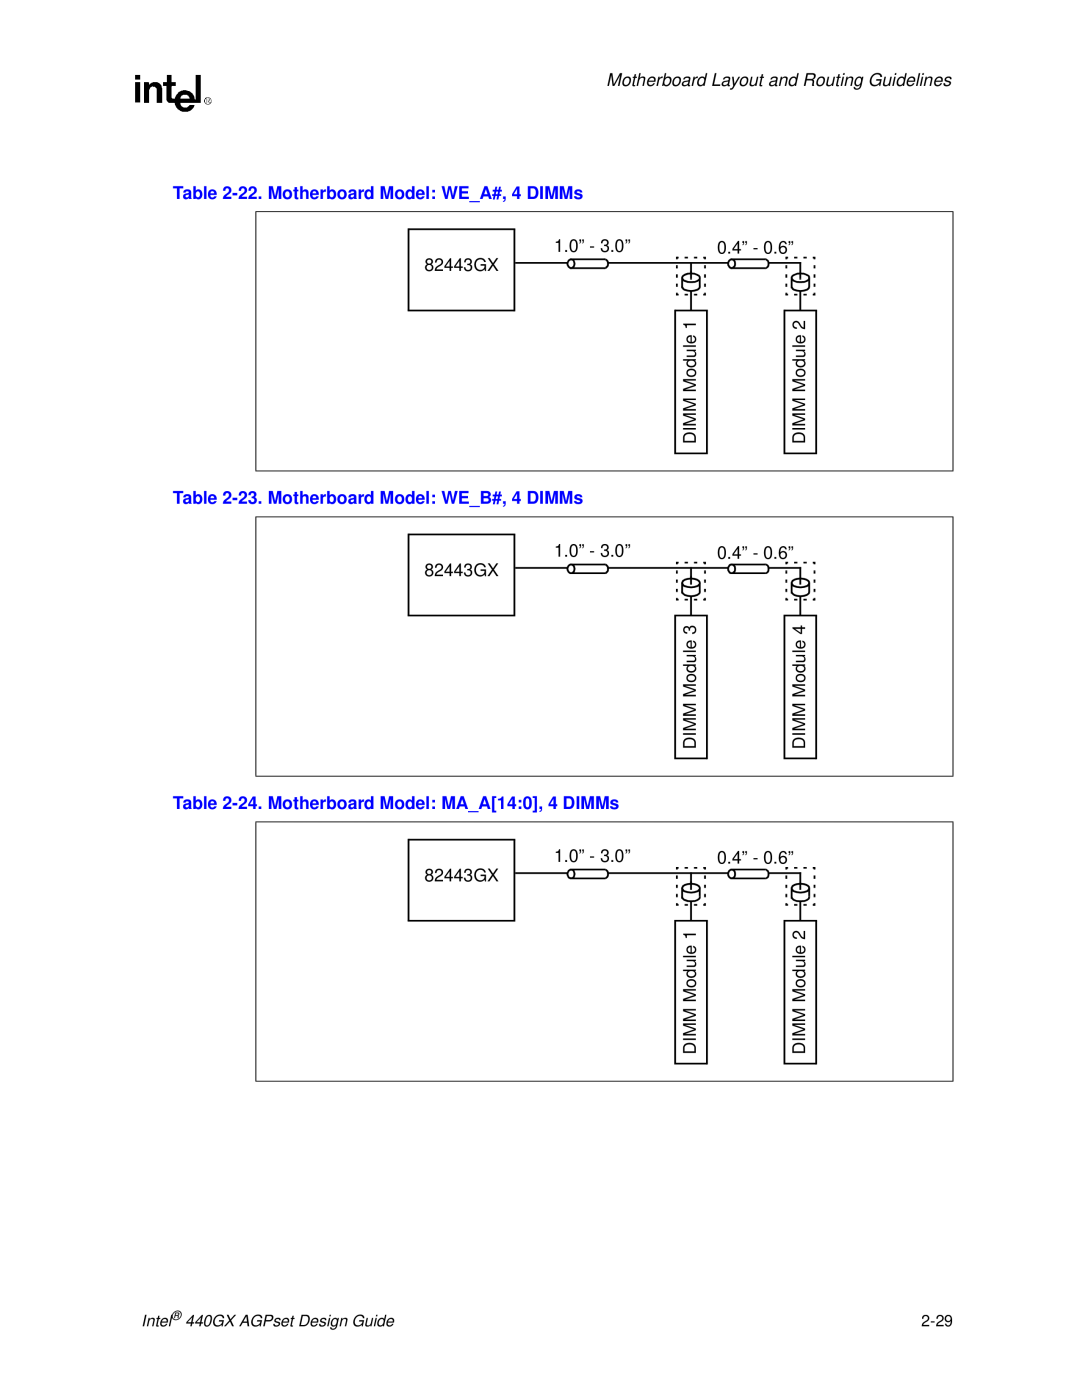 Intel 440GX manual 22. Motherboard Model WEA#, 4 DIMMs, 23. Motherboard Model WEB#, 4 DIMMs 